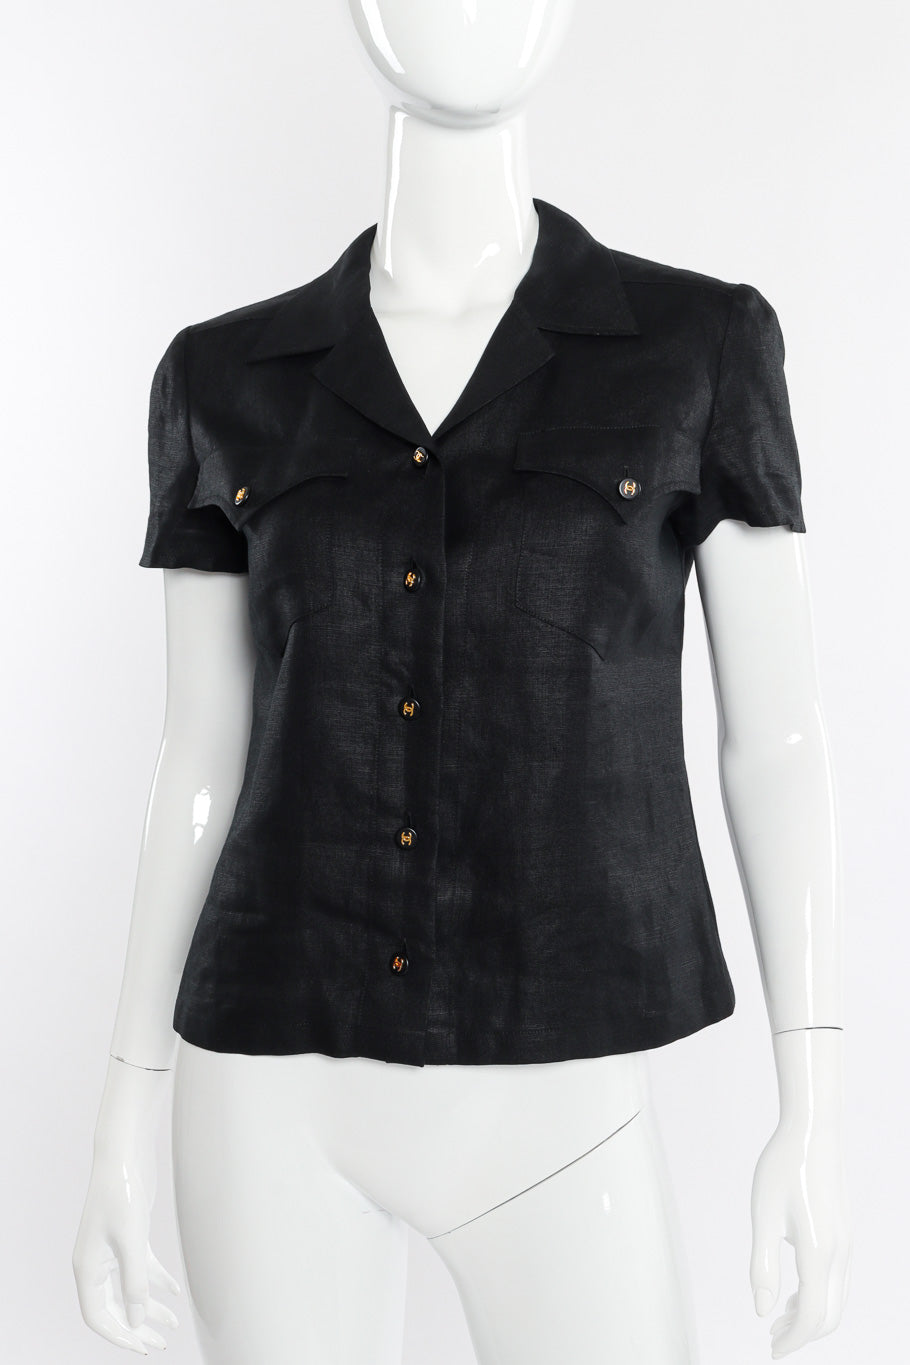 Vintage Chanel CC Button Linen Shirt front view on mannequin closeup @recessla